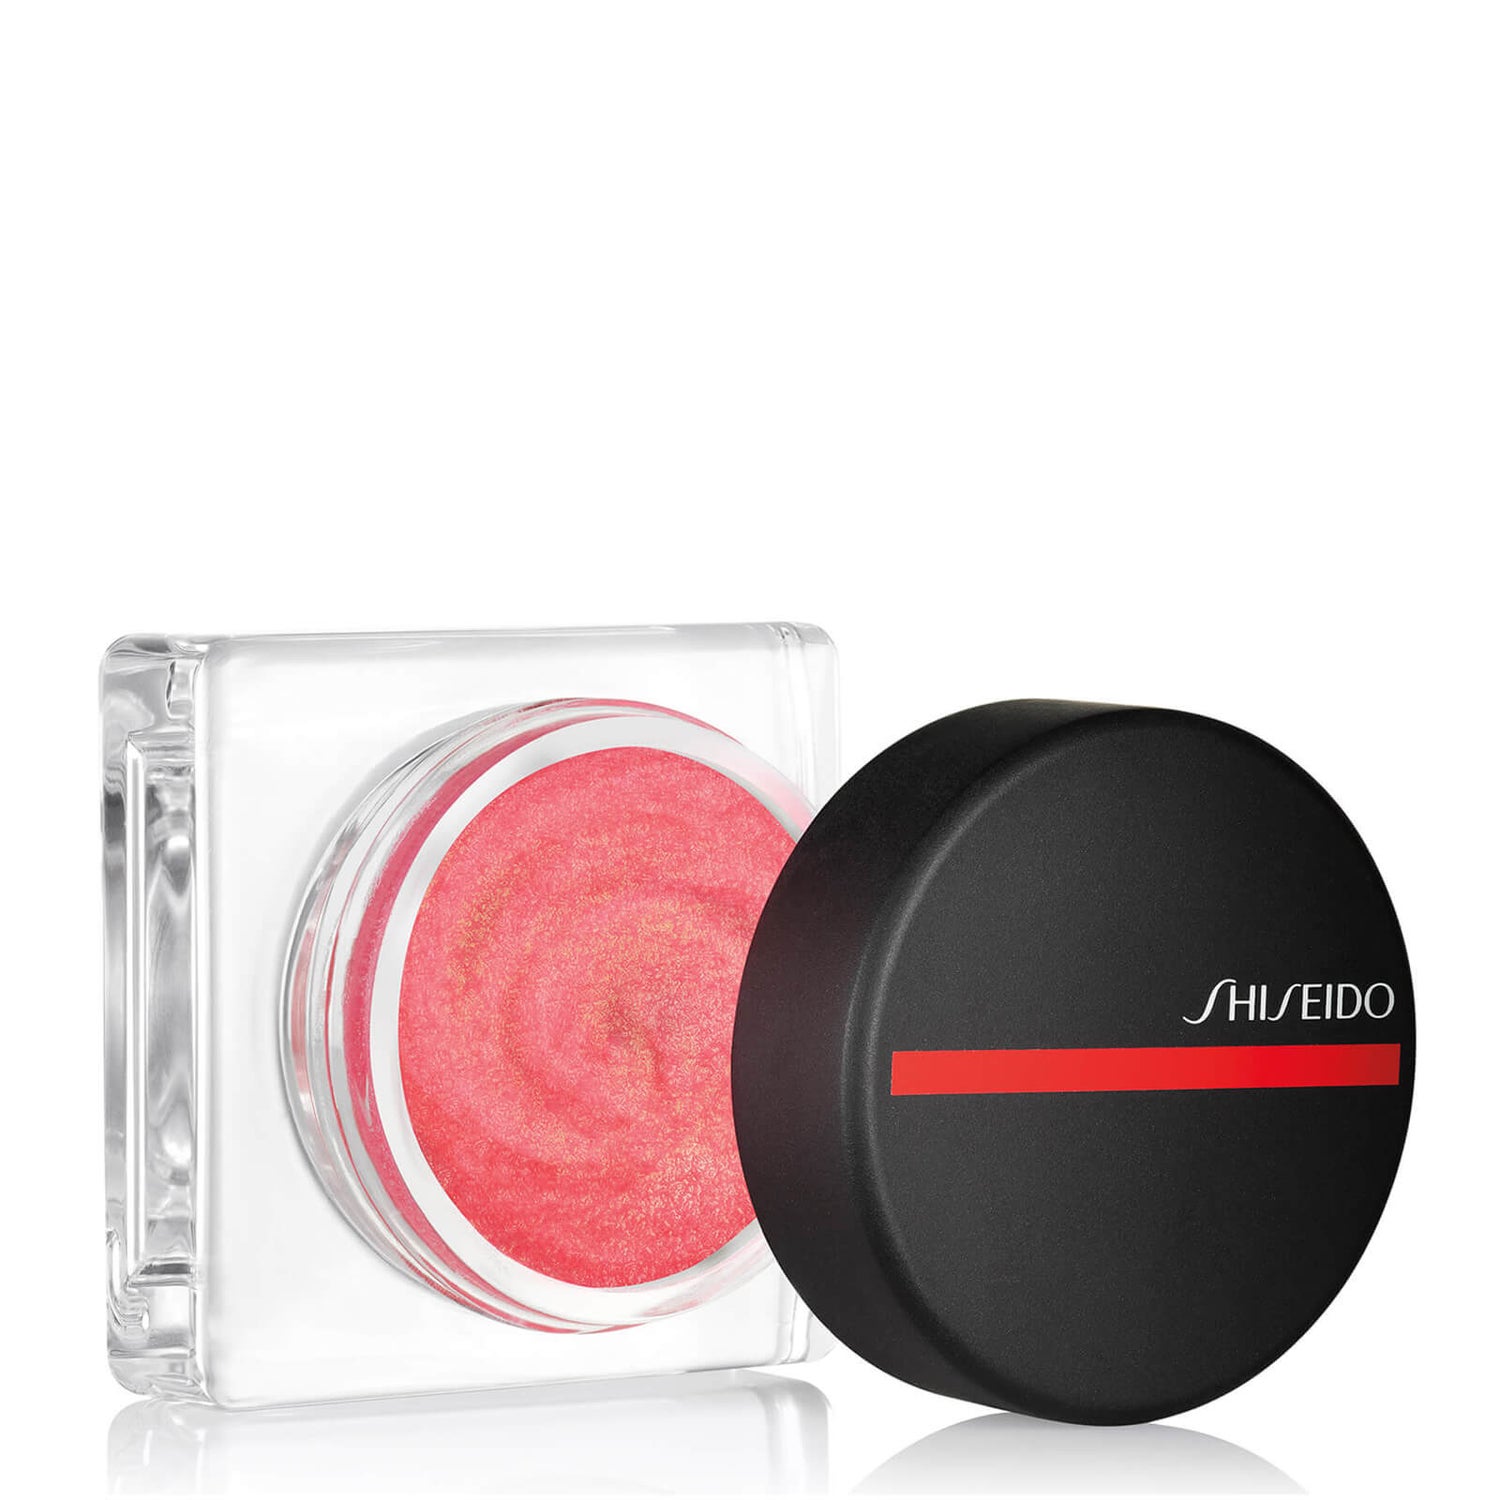 Shiseido Minimalist Whipped Powder Blush (verschiedene Farbtöne)